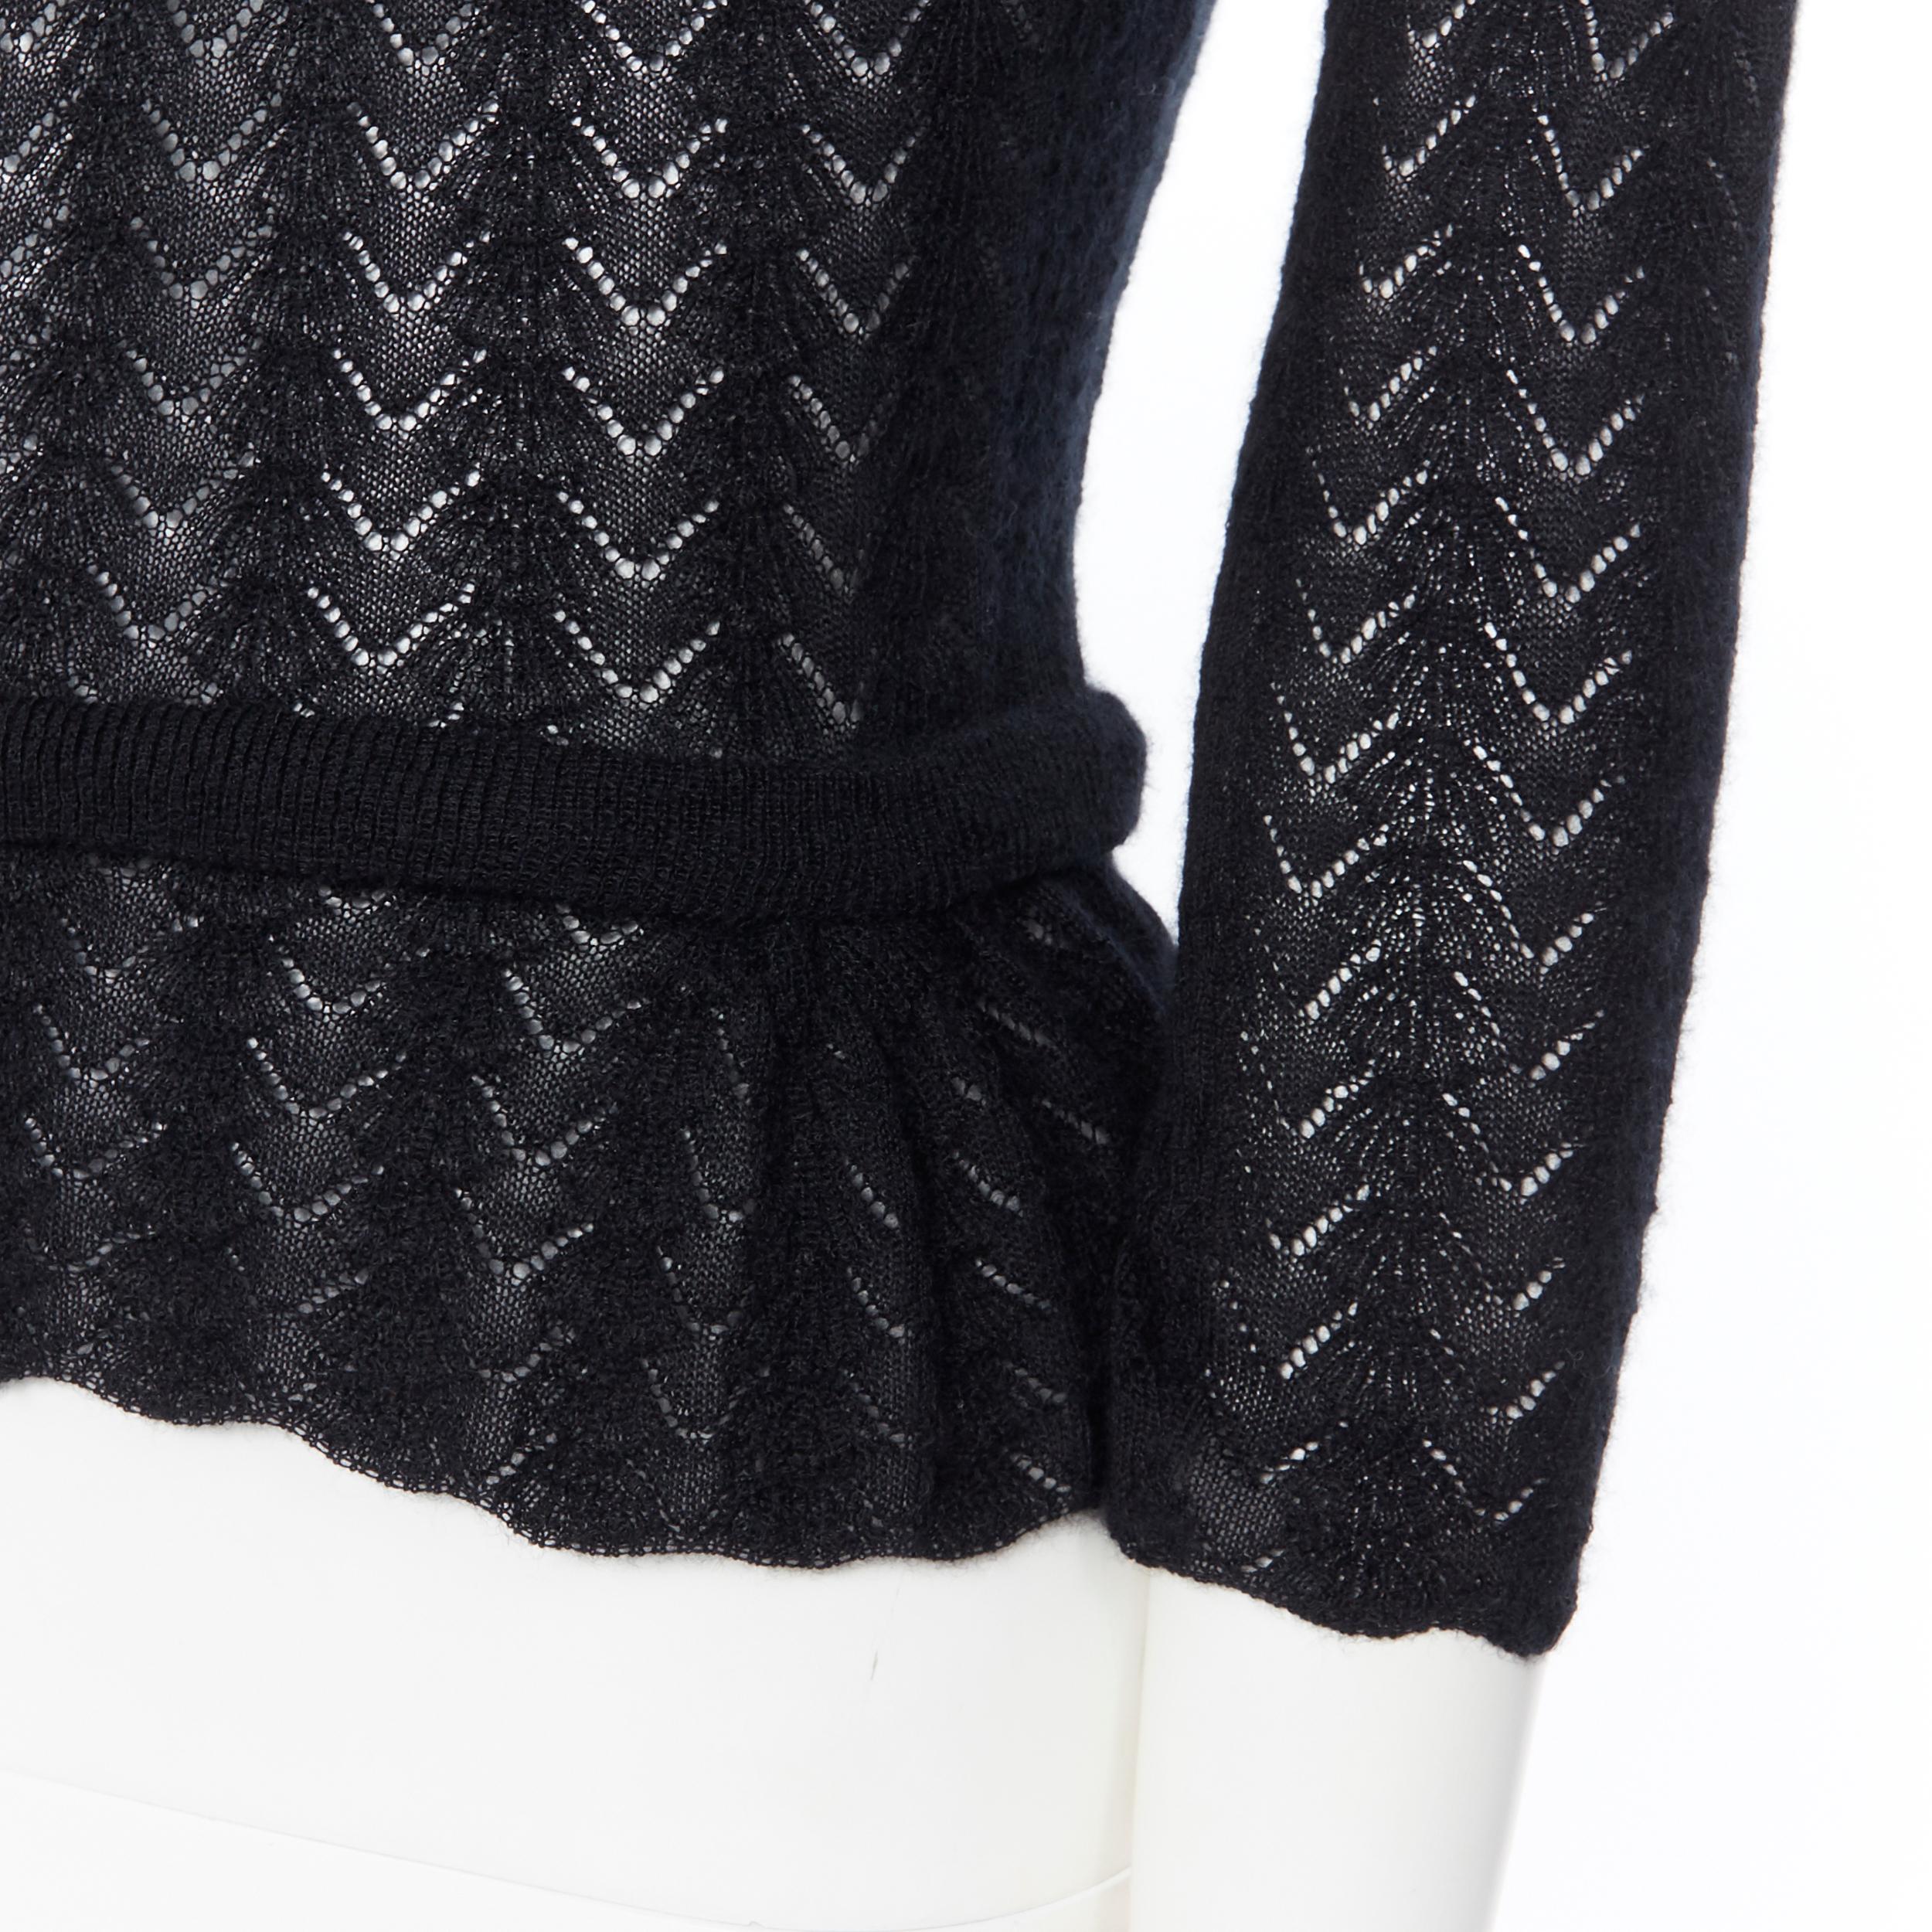 LOUIS VUITTON 100% cashmere black lace loose knit  turtleneck sweater top M 1